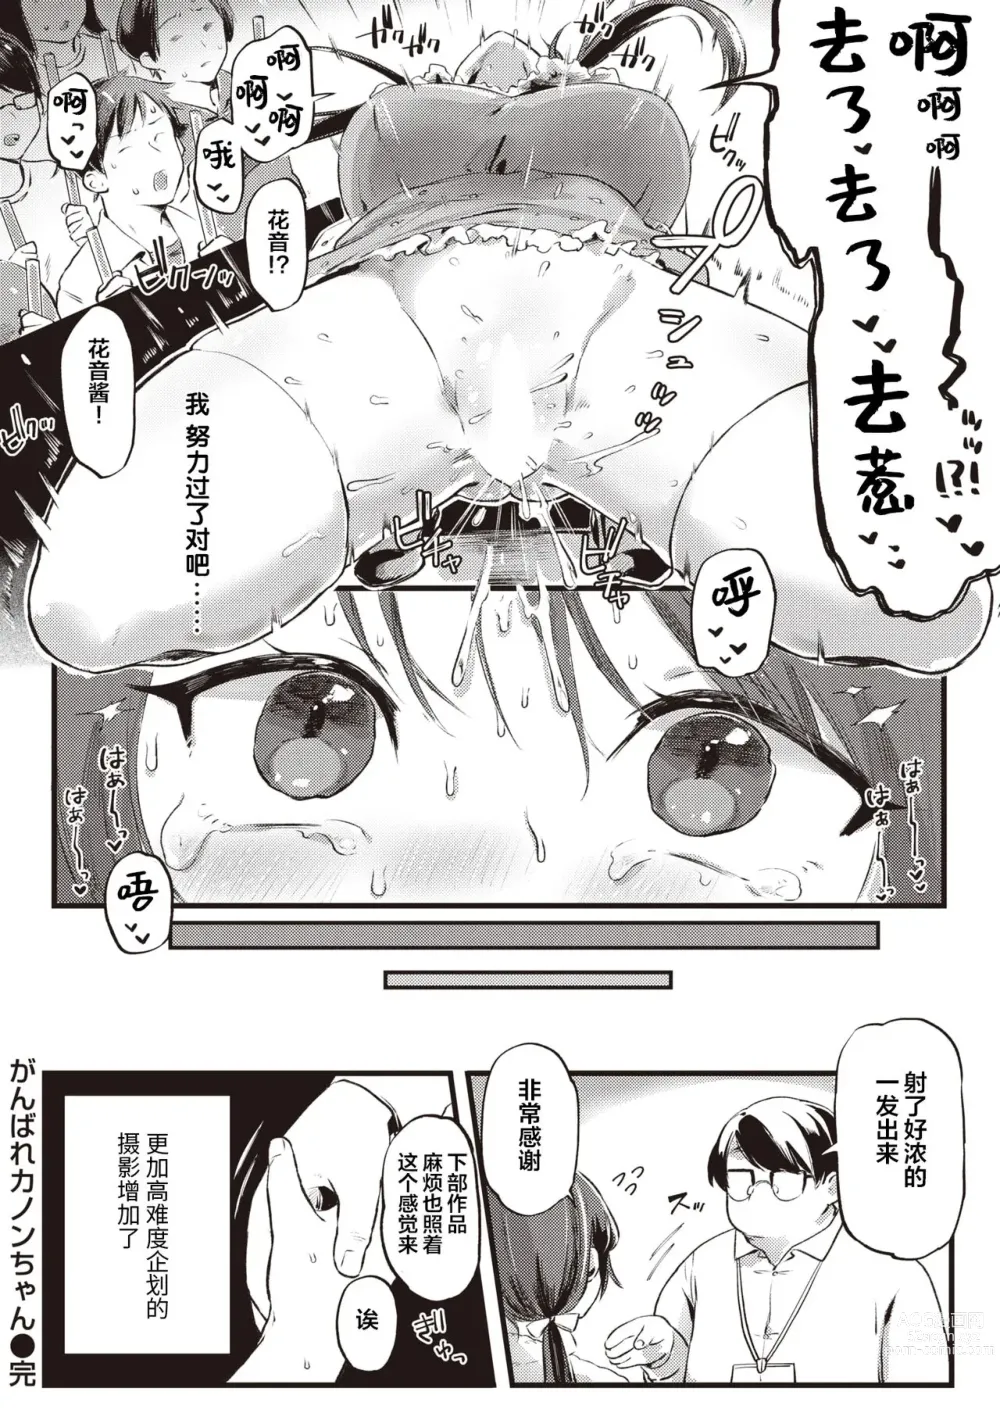 Page 16 of manga Ganbare Kanon-chan